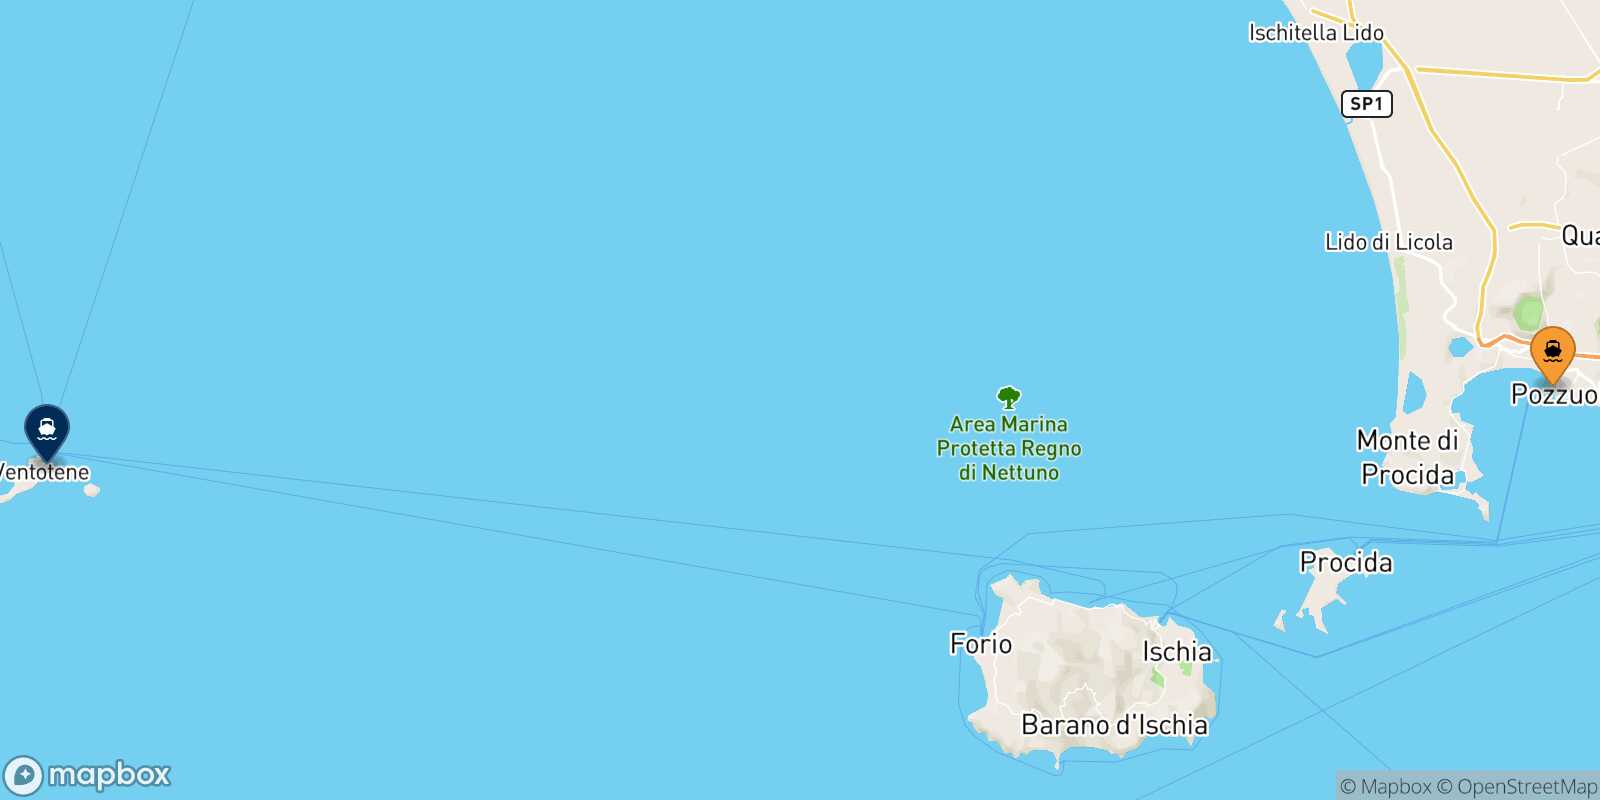 Mappa della rotta Casamicciola (Ischia) Ventotene